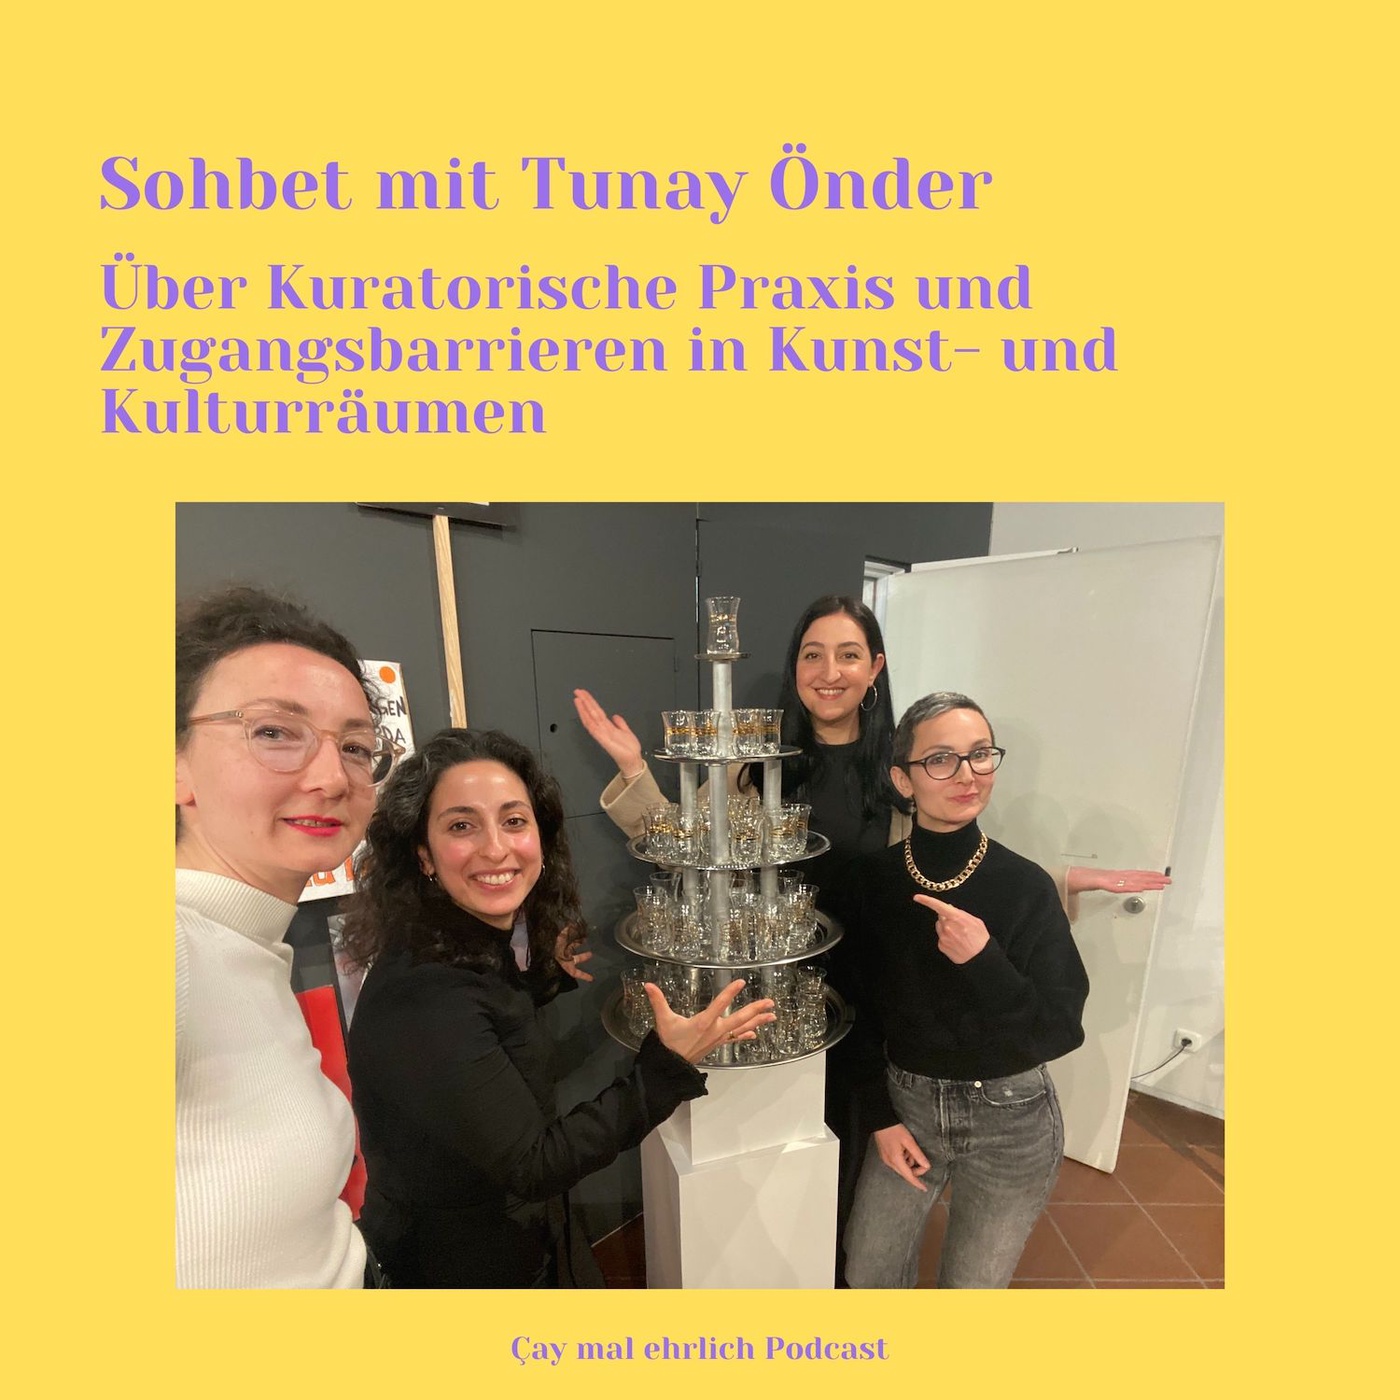 Sohbet mit Tunay Önder - Über Kuratorische Praxis und Zugangsbarrieren in Kunst- und Kulturräumen